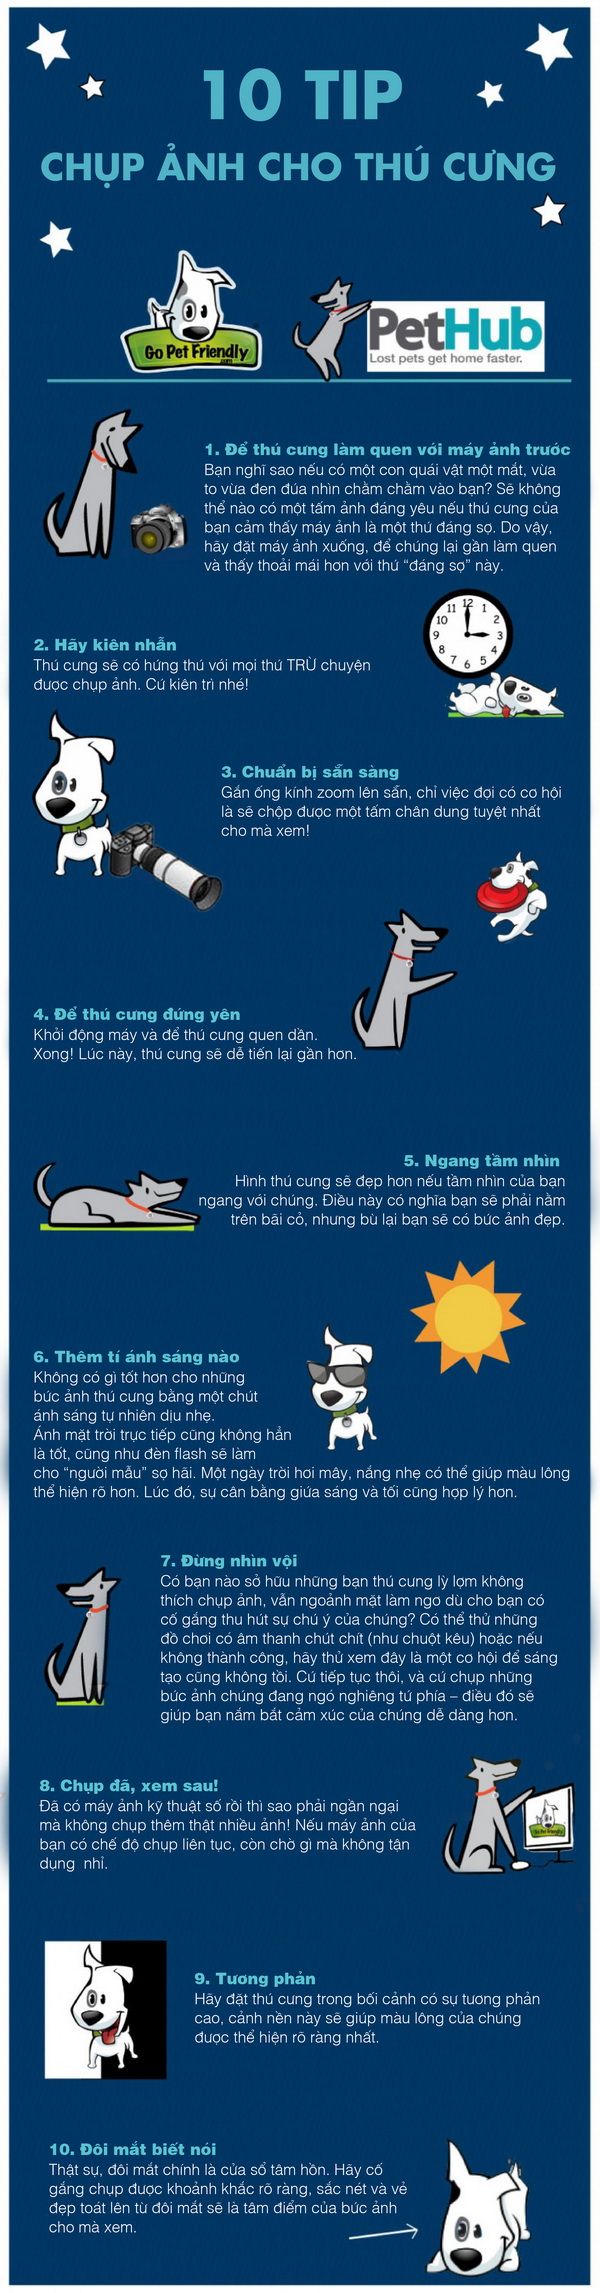 [Infographic] 10 Tip tuyệt vời chụp ảnh cho thú cưng